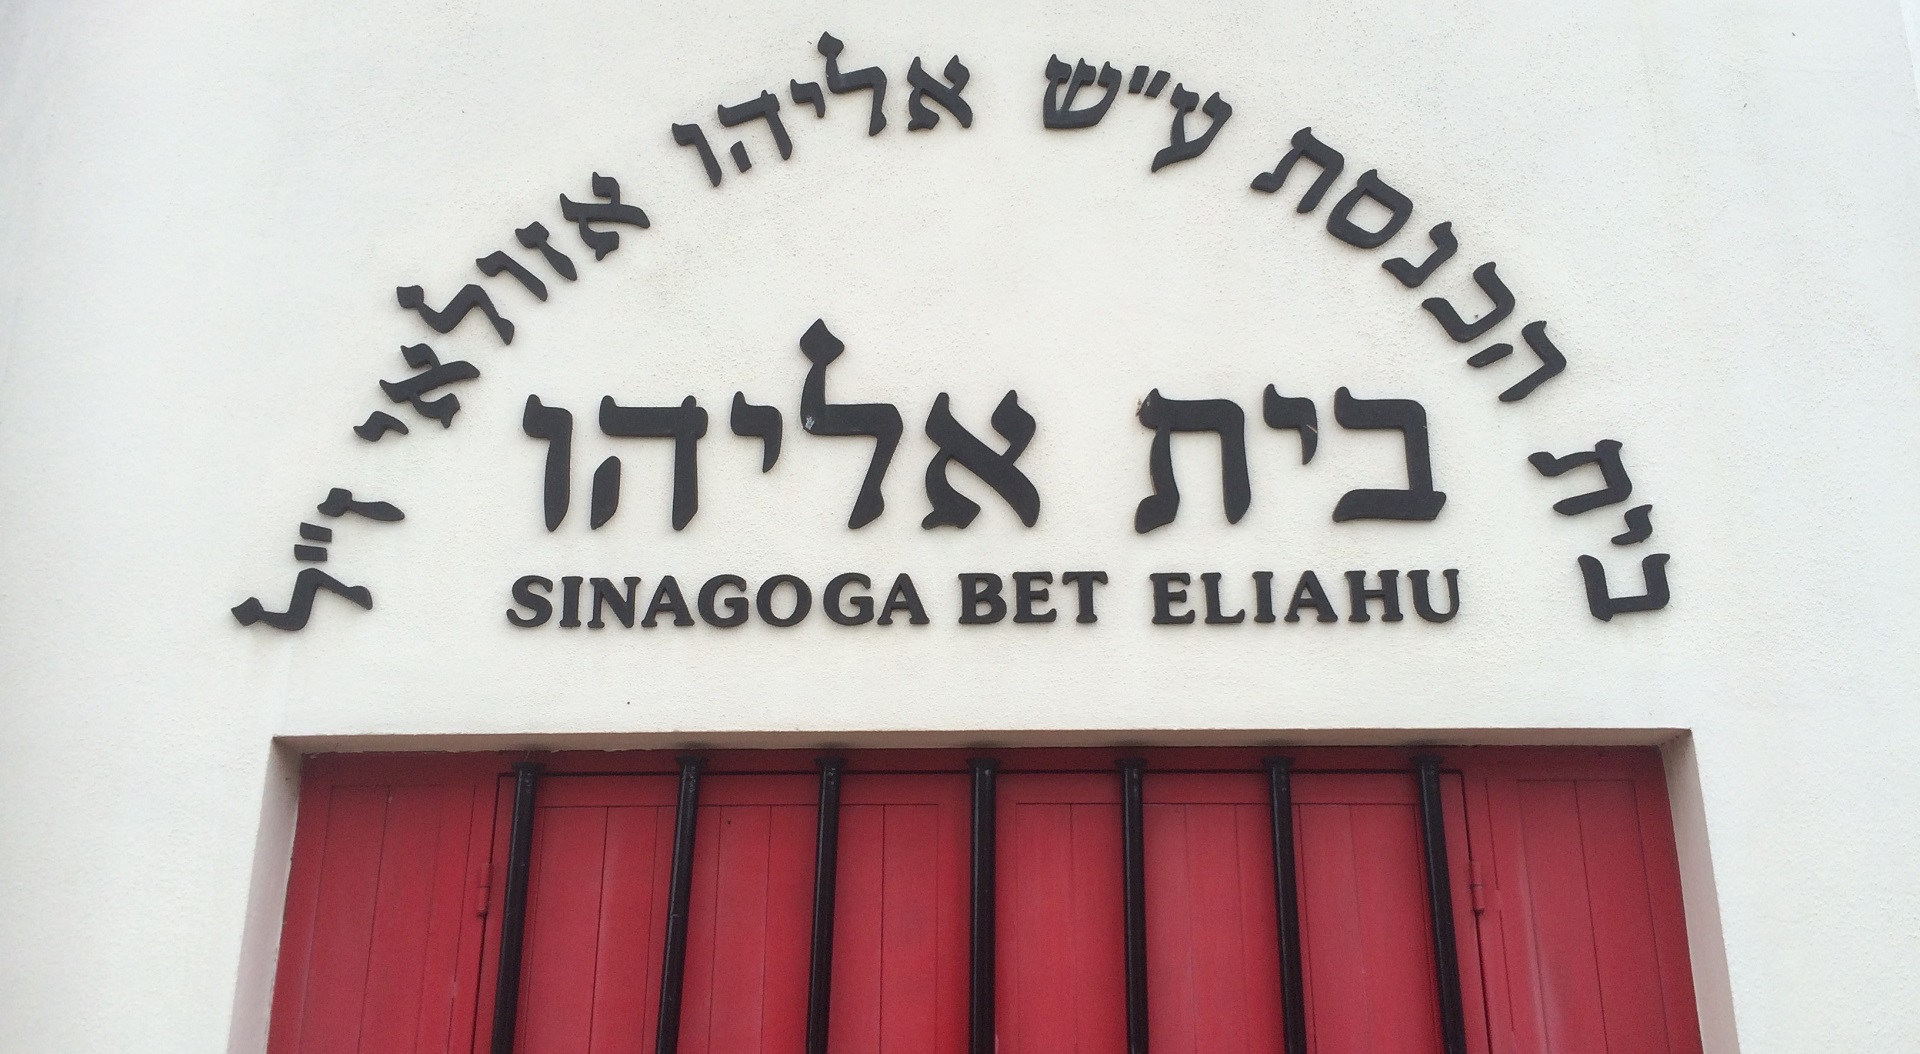 Edifício da sinagoga ou templo judaico com local de culto